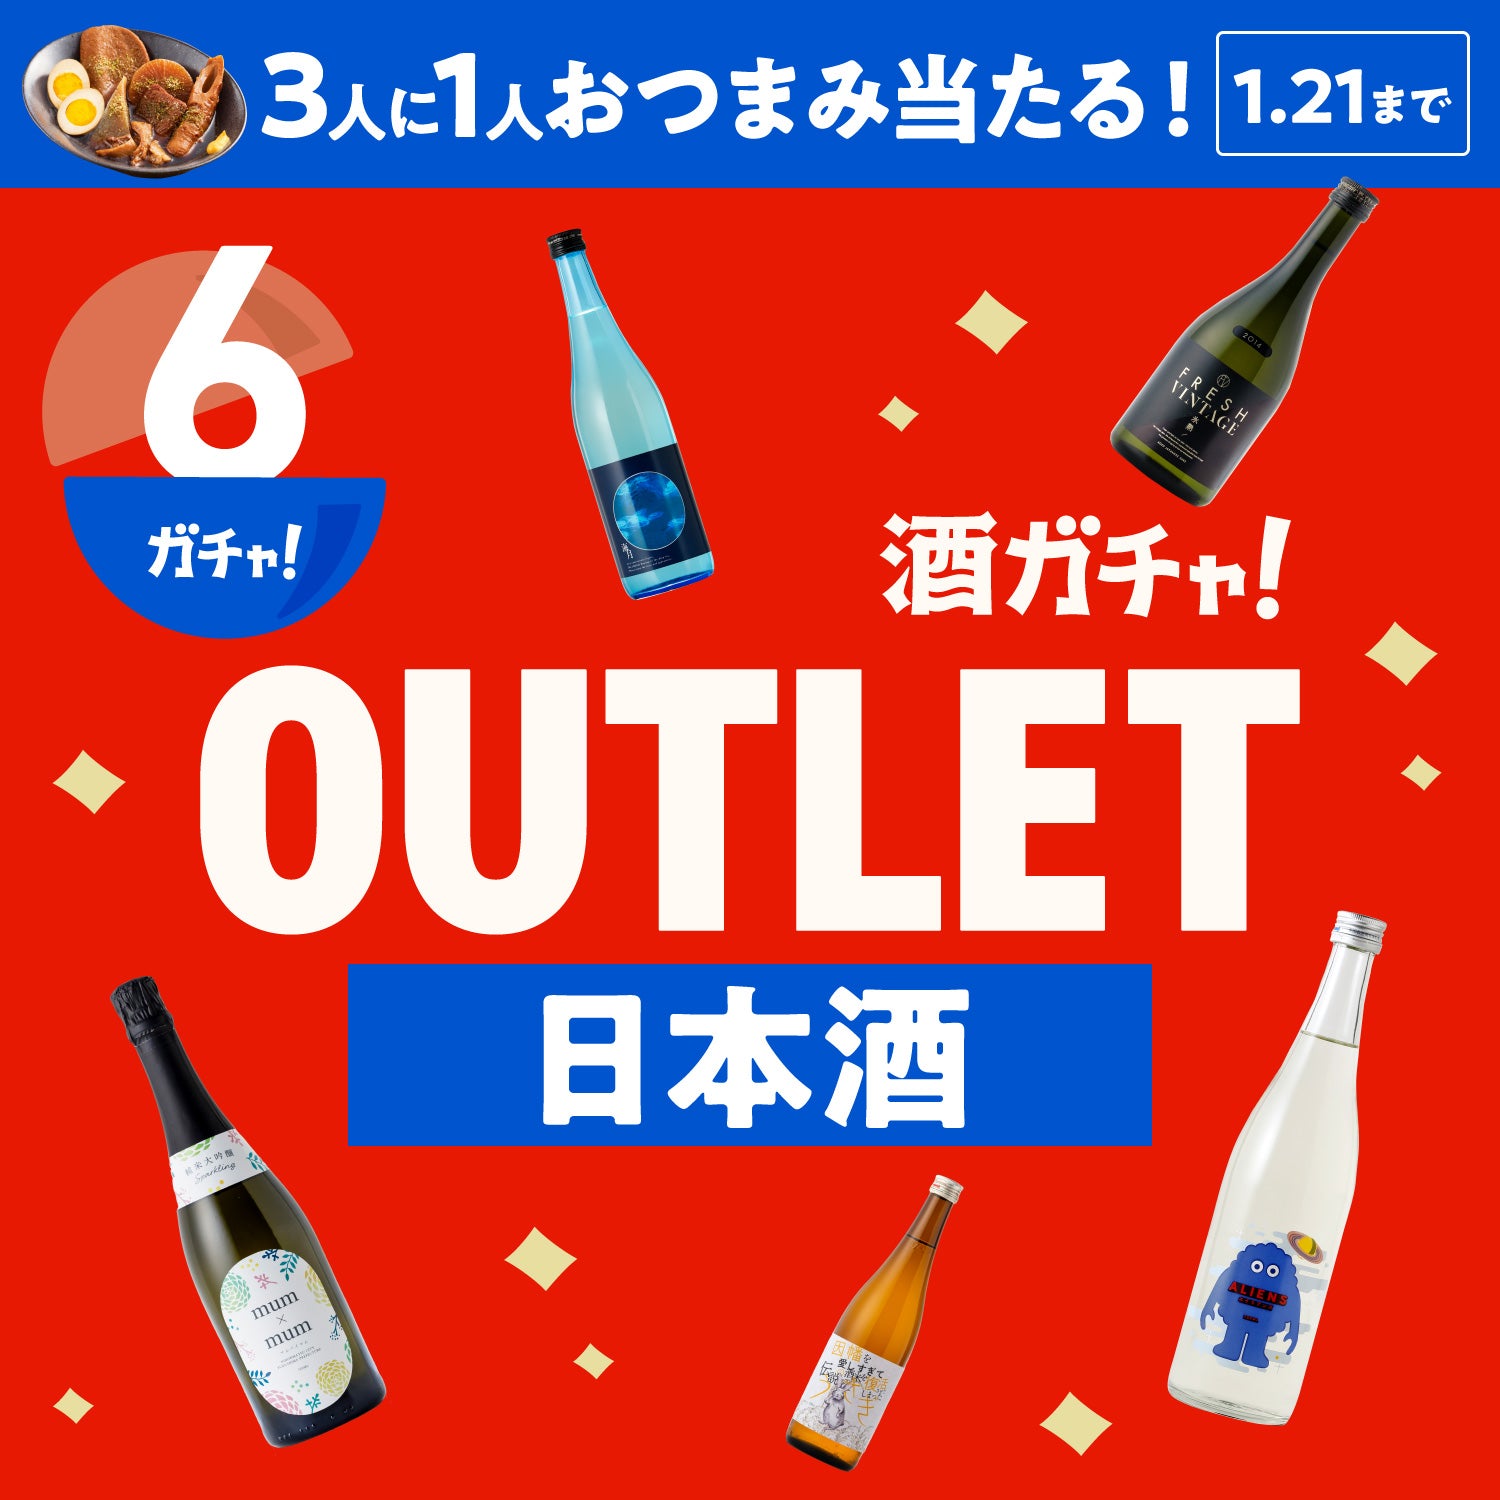 【6本】酒ガチャアウトレット -日本酒-【1月21日まで】